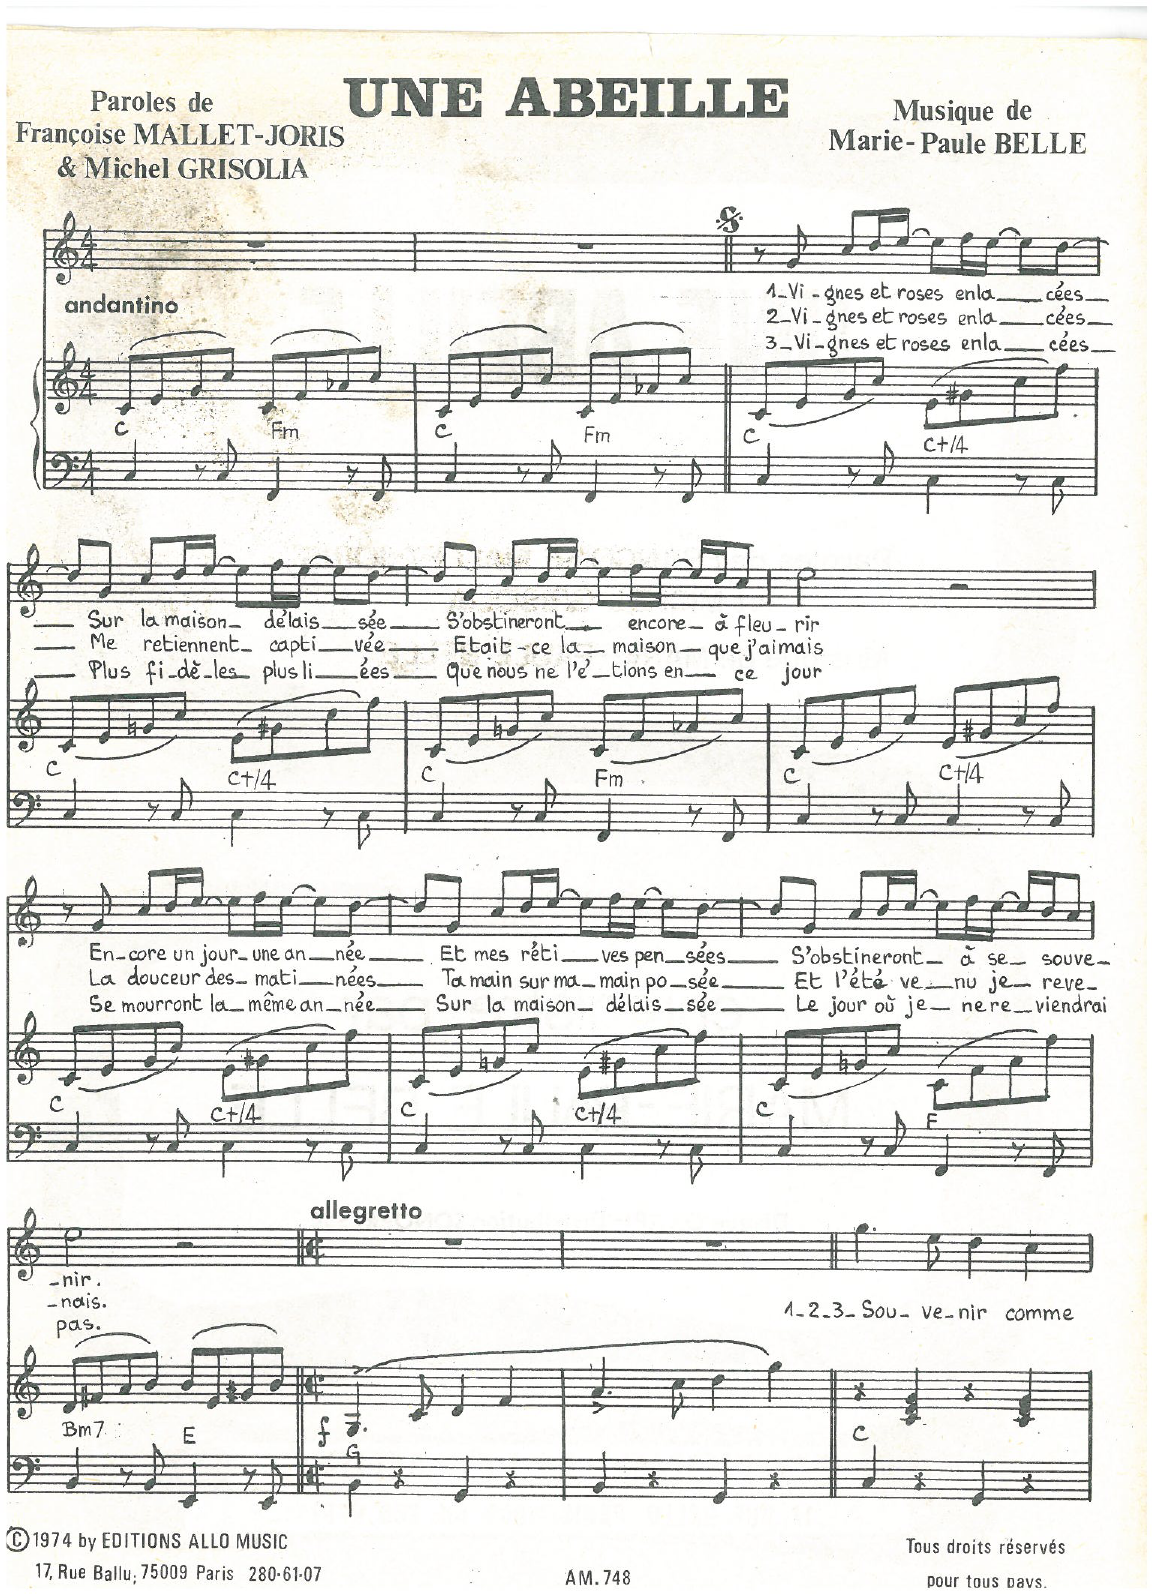 Michel Grisolia, Françoise Mallet-Joris, Marie Paule Belle Une Abeille Sheet Music Notes & Chords for Piano & Vocal - Download or Print PDF